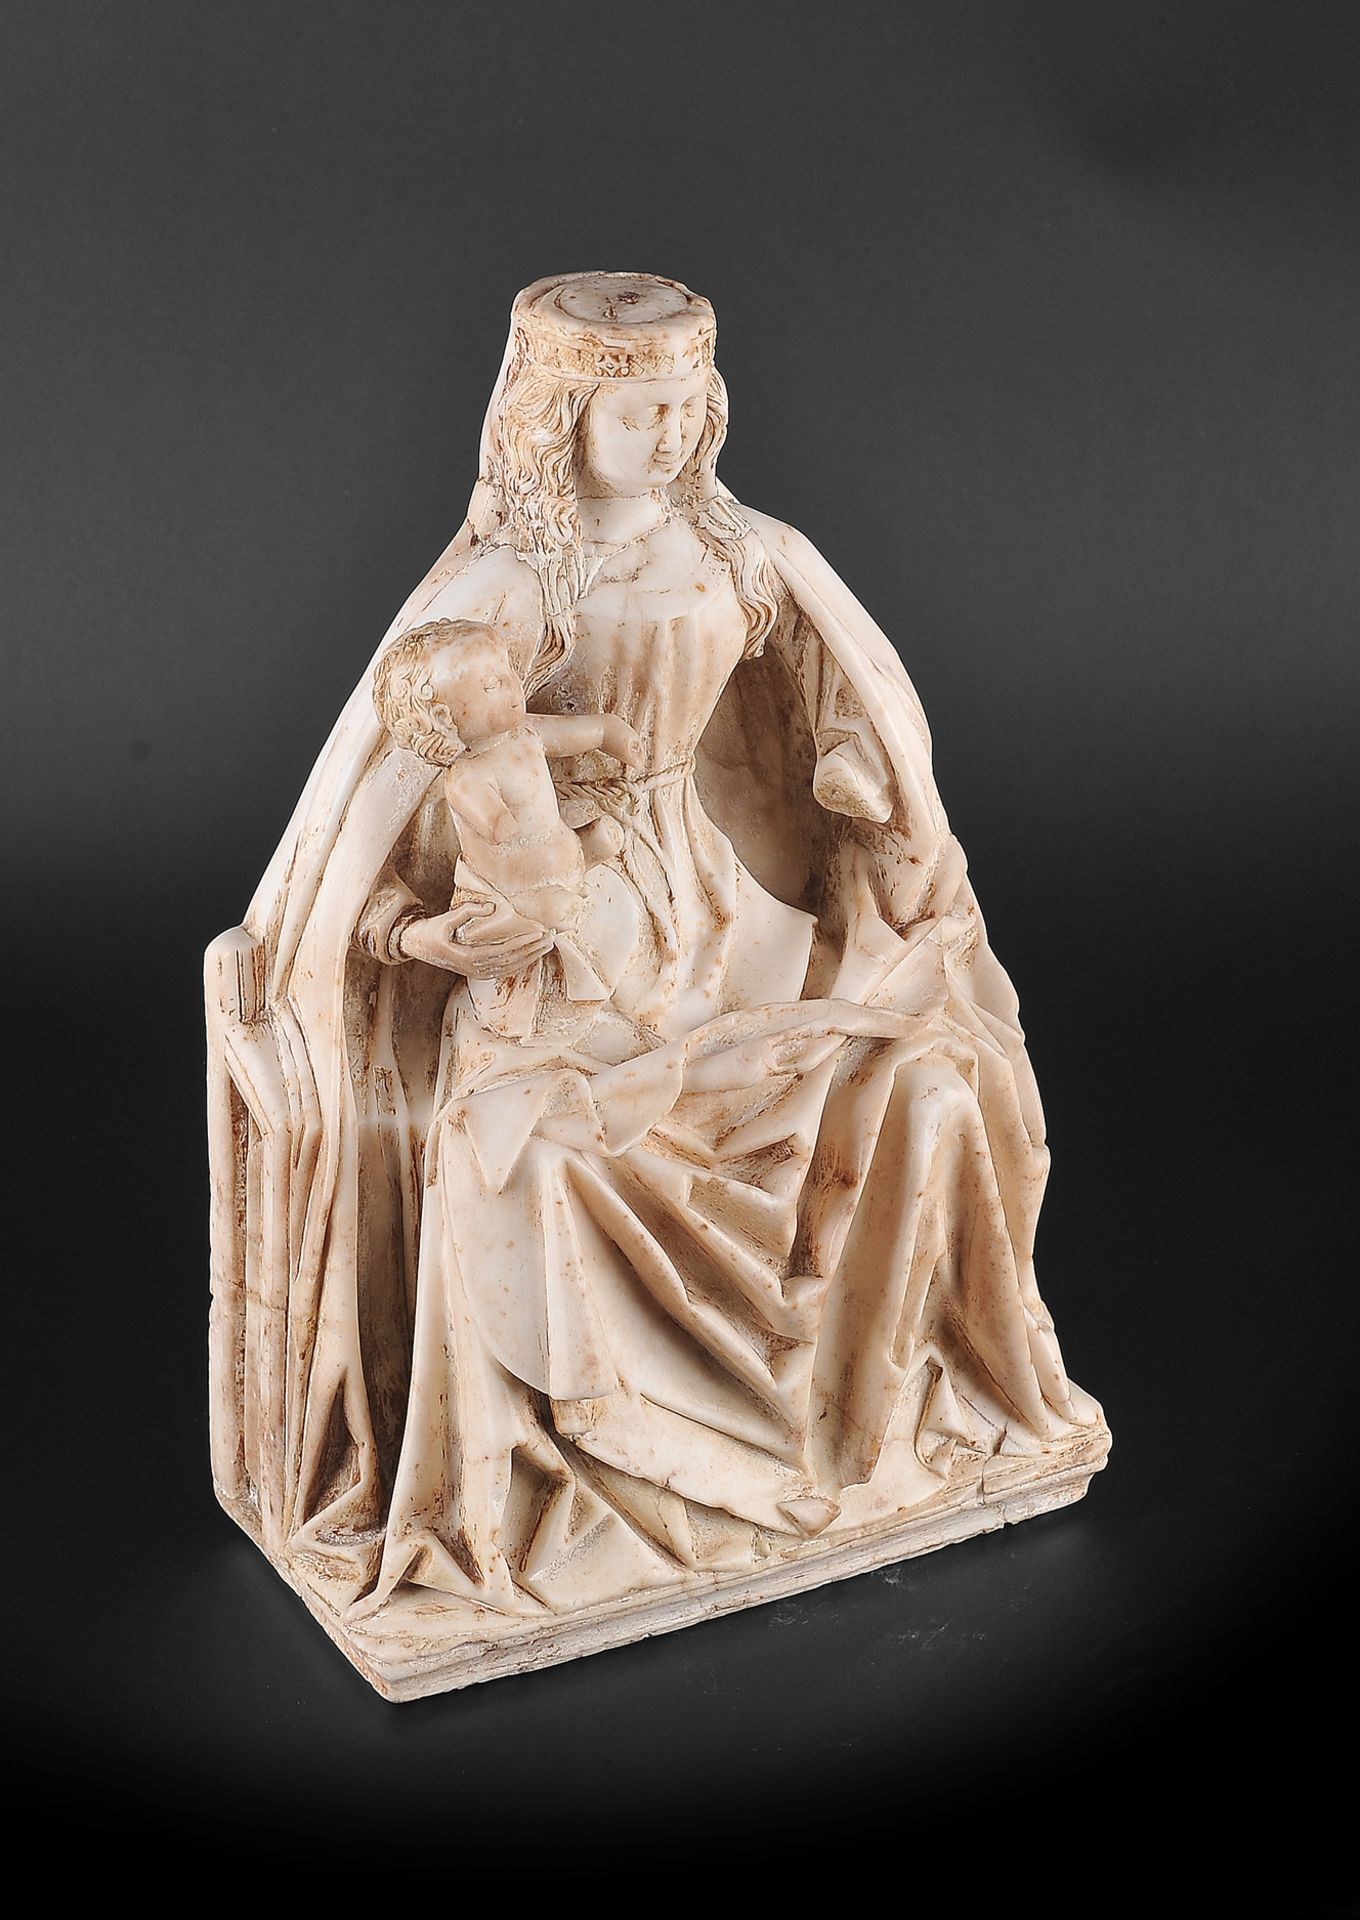 Gil de Siloe, Antwerpen 1440 – 1501 Burgos (und Werkstatt), Sitzende Madonna, um 1485/90 - Bild 6 aus 25